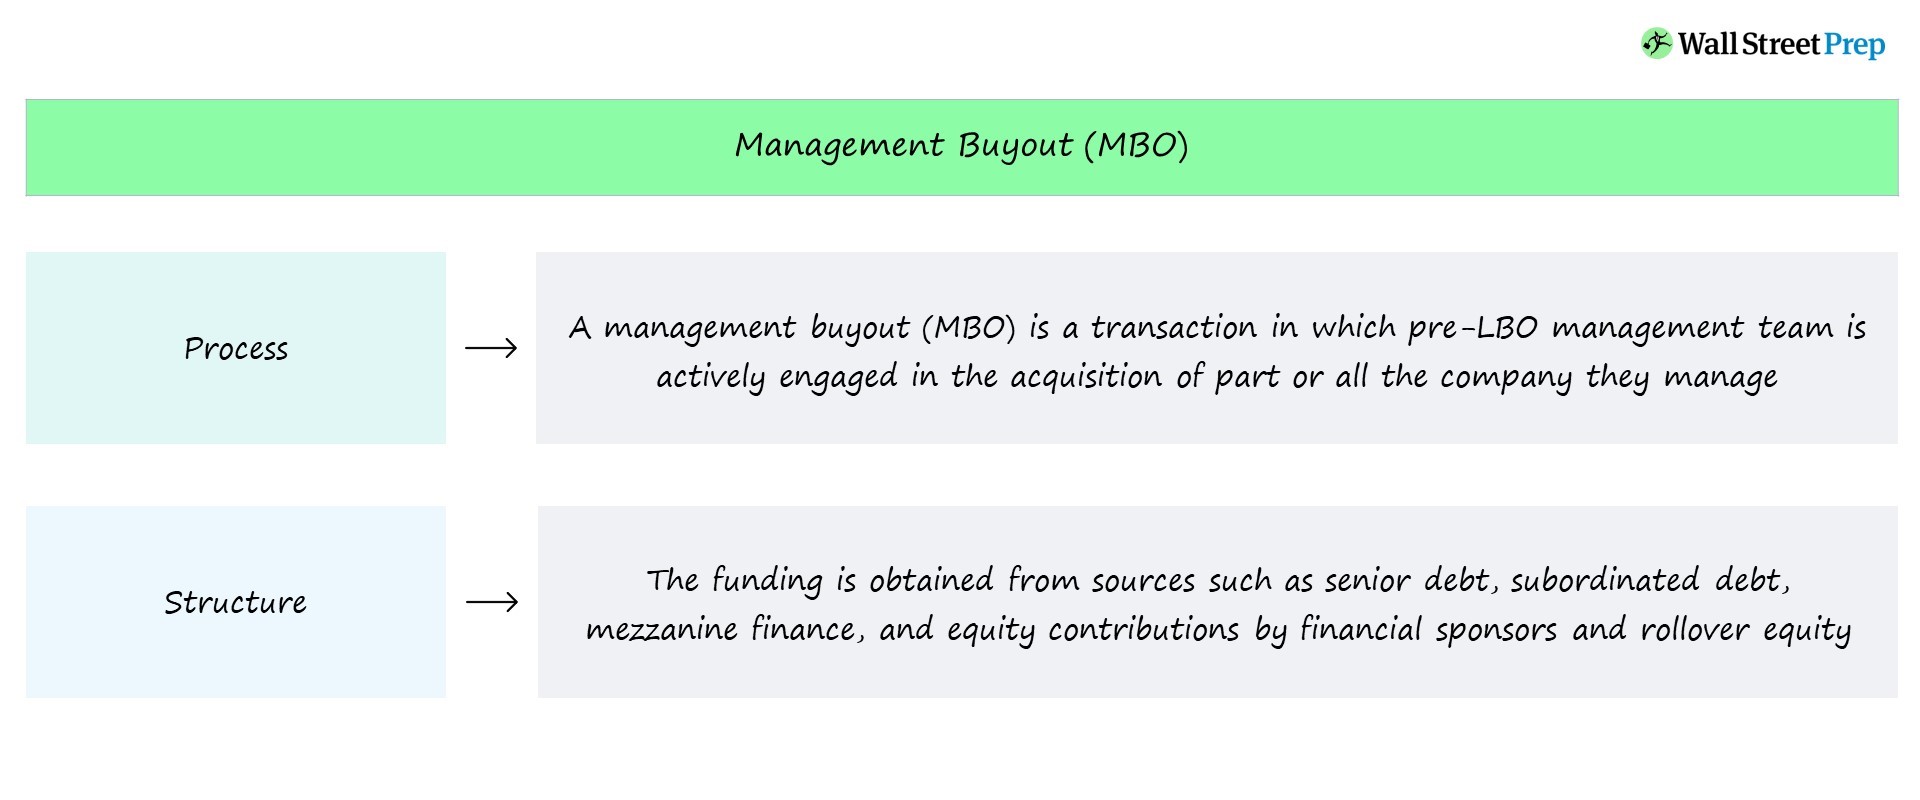 Compra de gestión (MBO) | Estructura de transacción + ejemplos